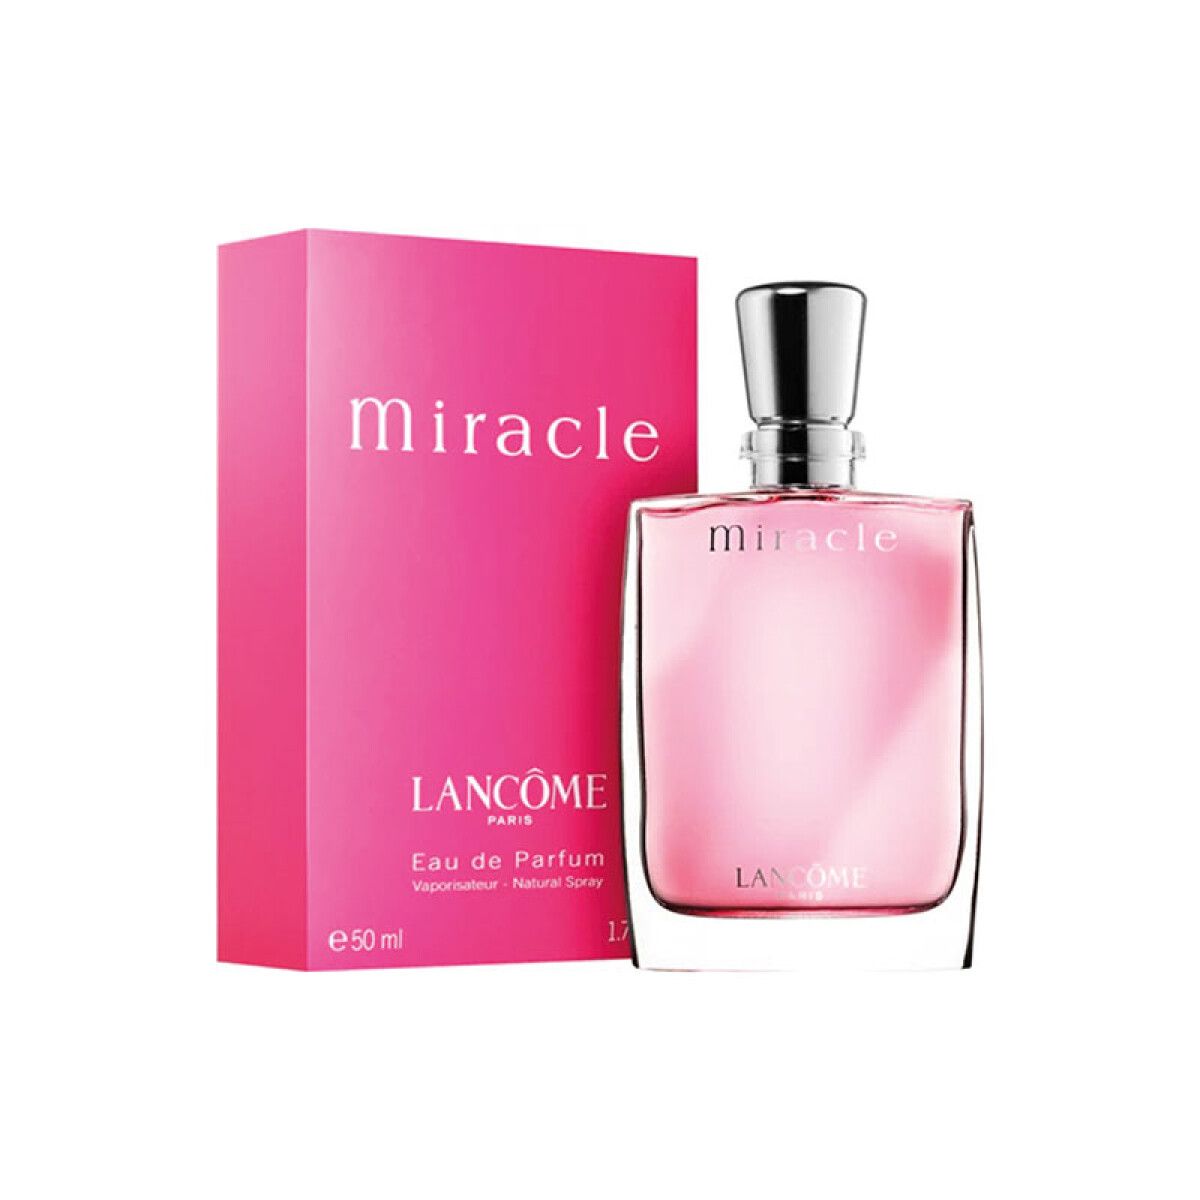 Miracle eau de parfum Lancome - 50 ml 